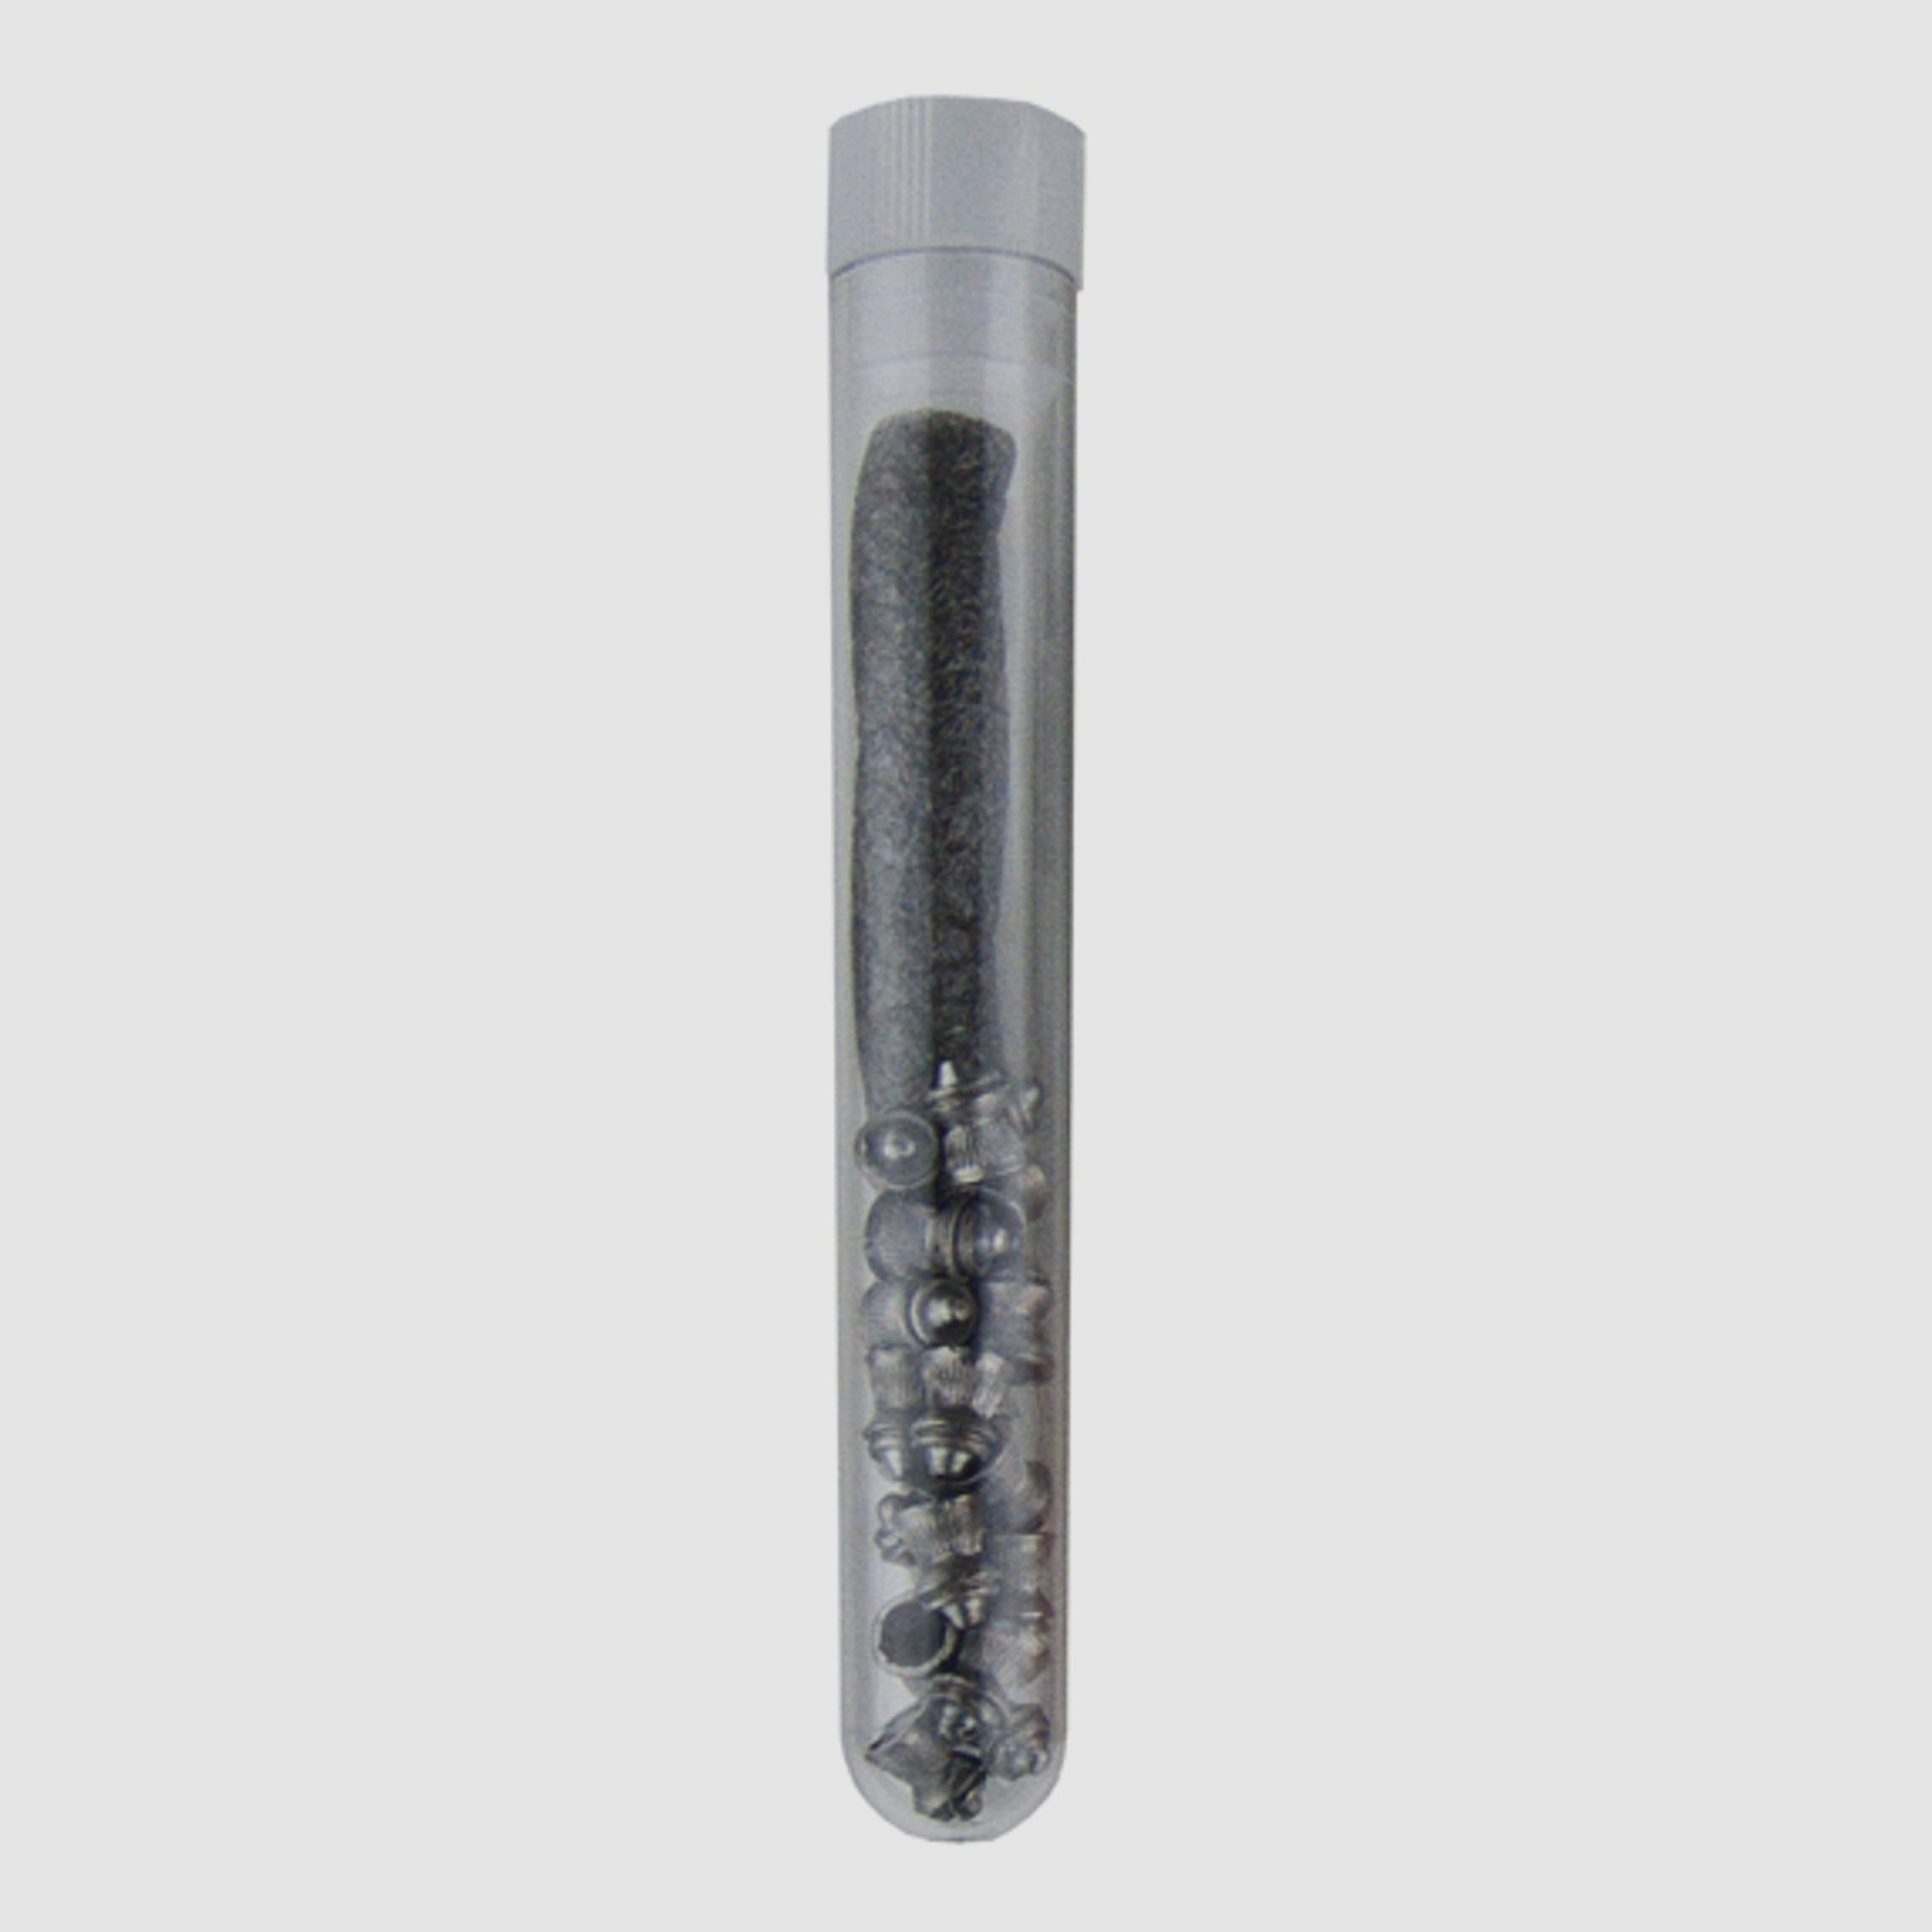 Testpack 20 stk  COAL Rundkopf-Diabolos Fenix Line Pellets, 5,5 mm, 1,10 g